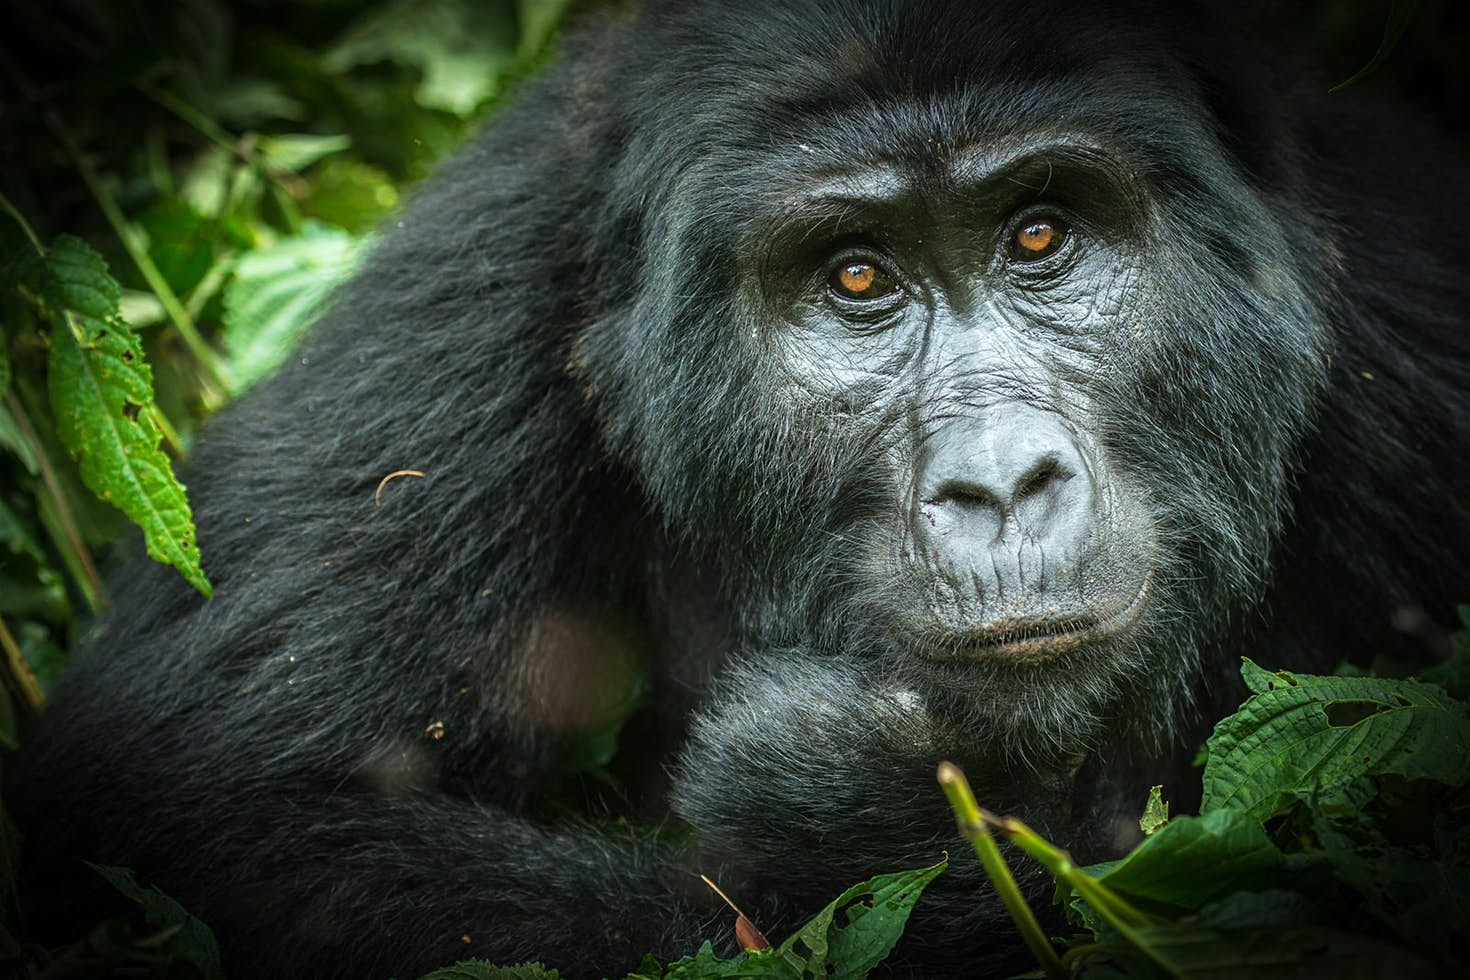 7 Day Uganda Great Apes Adventure Safari